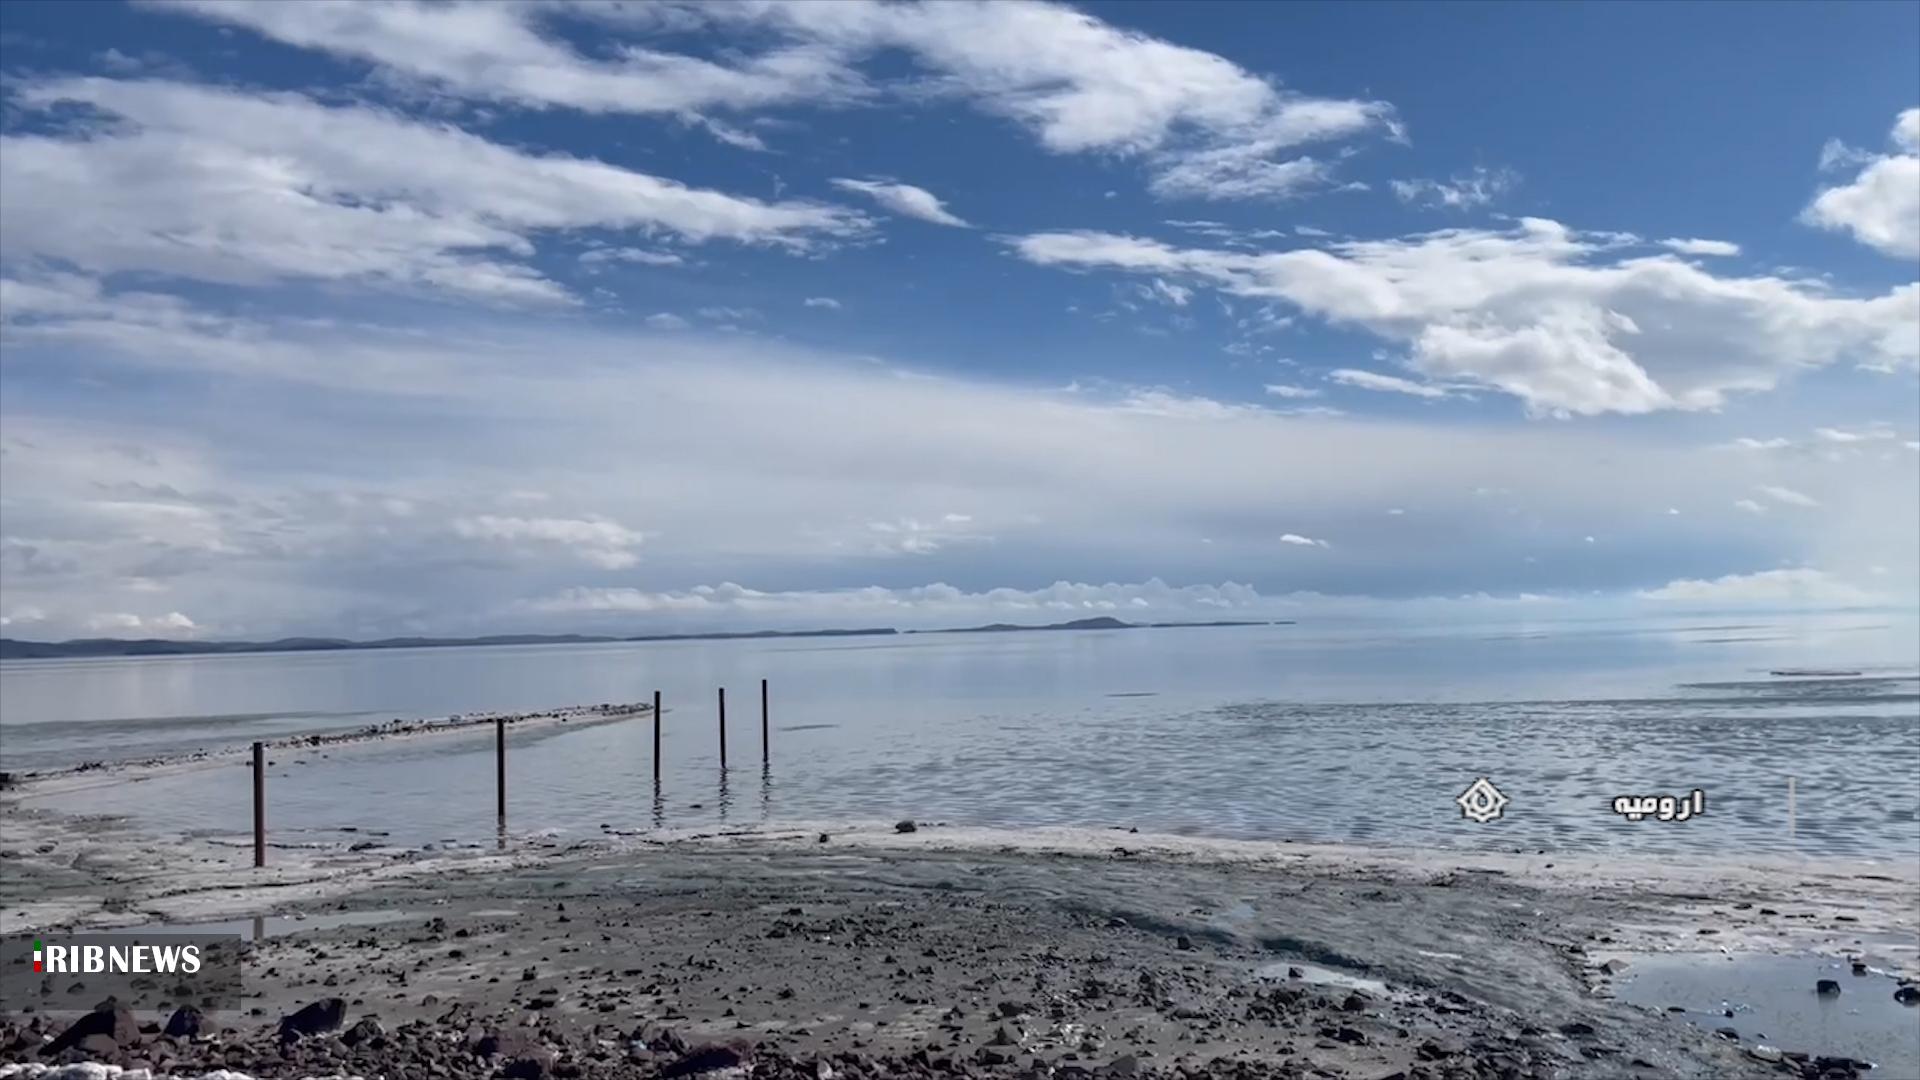 تصاویر دلبر از جان گرفتن دوباره دریاچه ارومیه